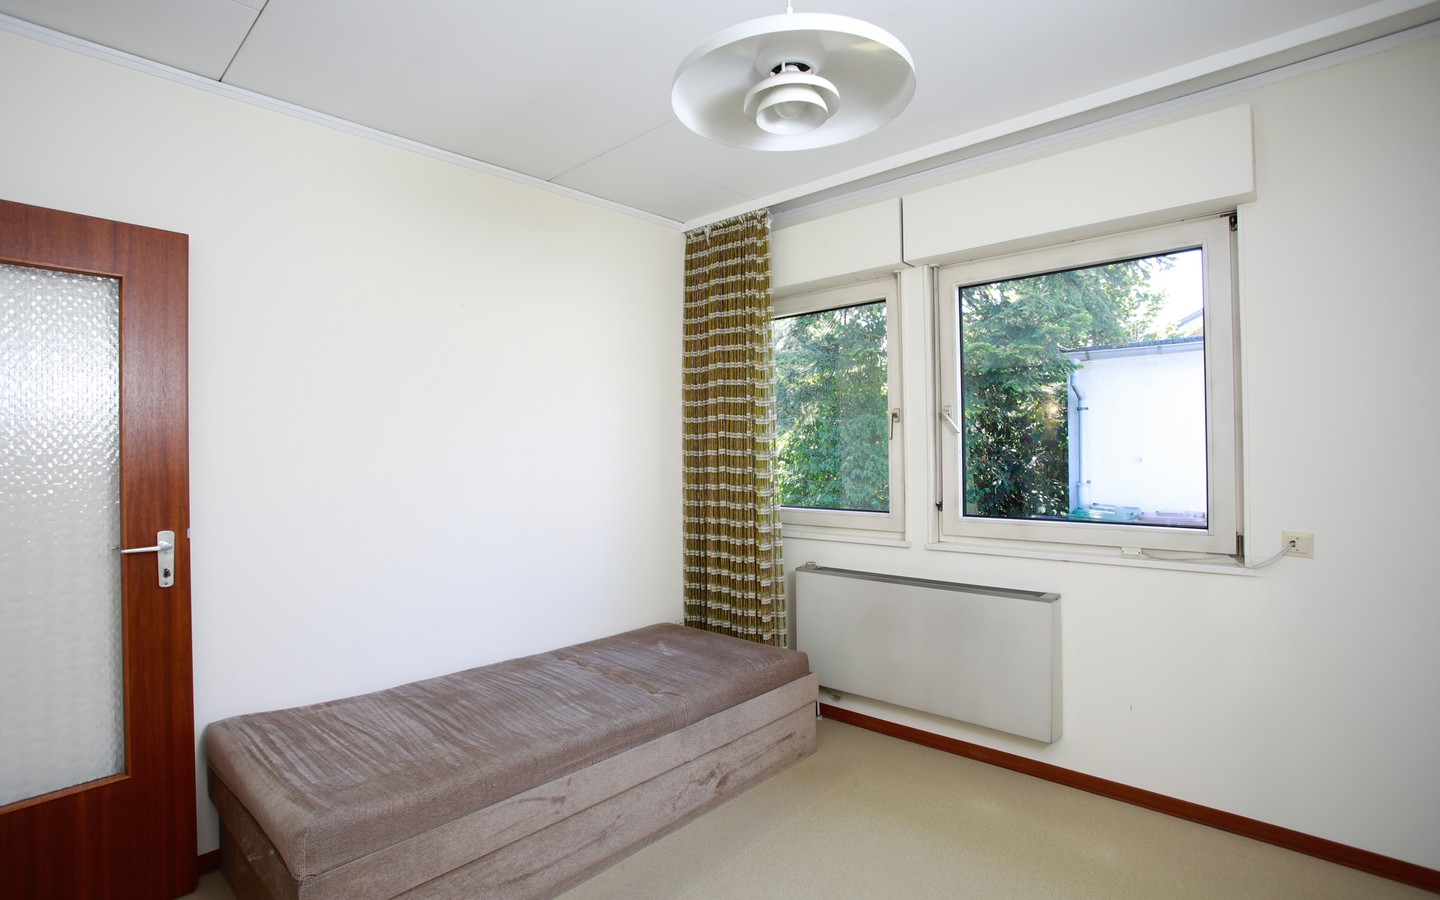 Zimmer 4 - Viel Platz zum Leben, Wohnen & Arbeiten: großzügiger Bungalow auf parkähnlichem Grundstück in Ketsch